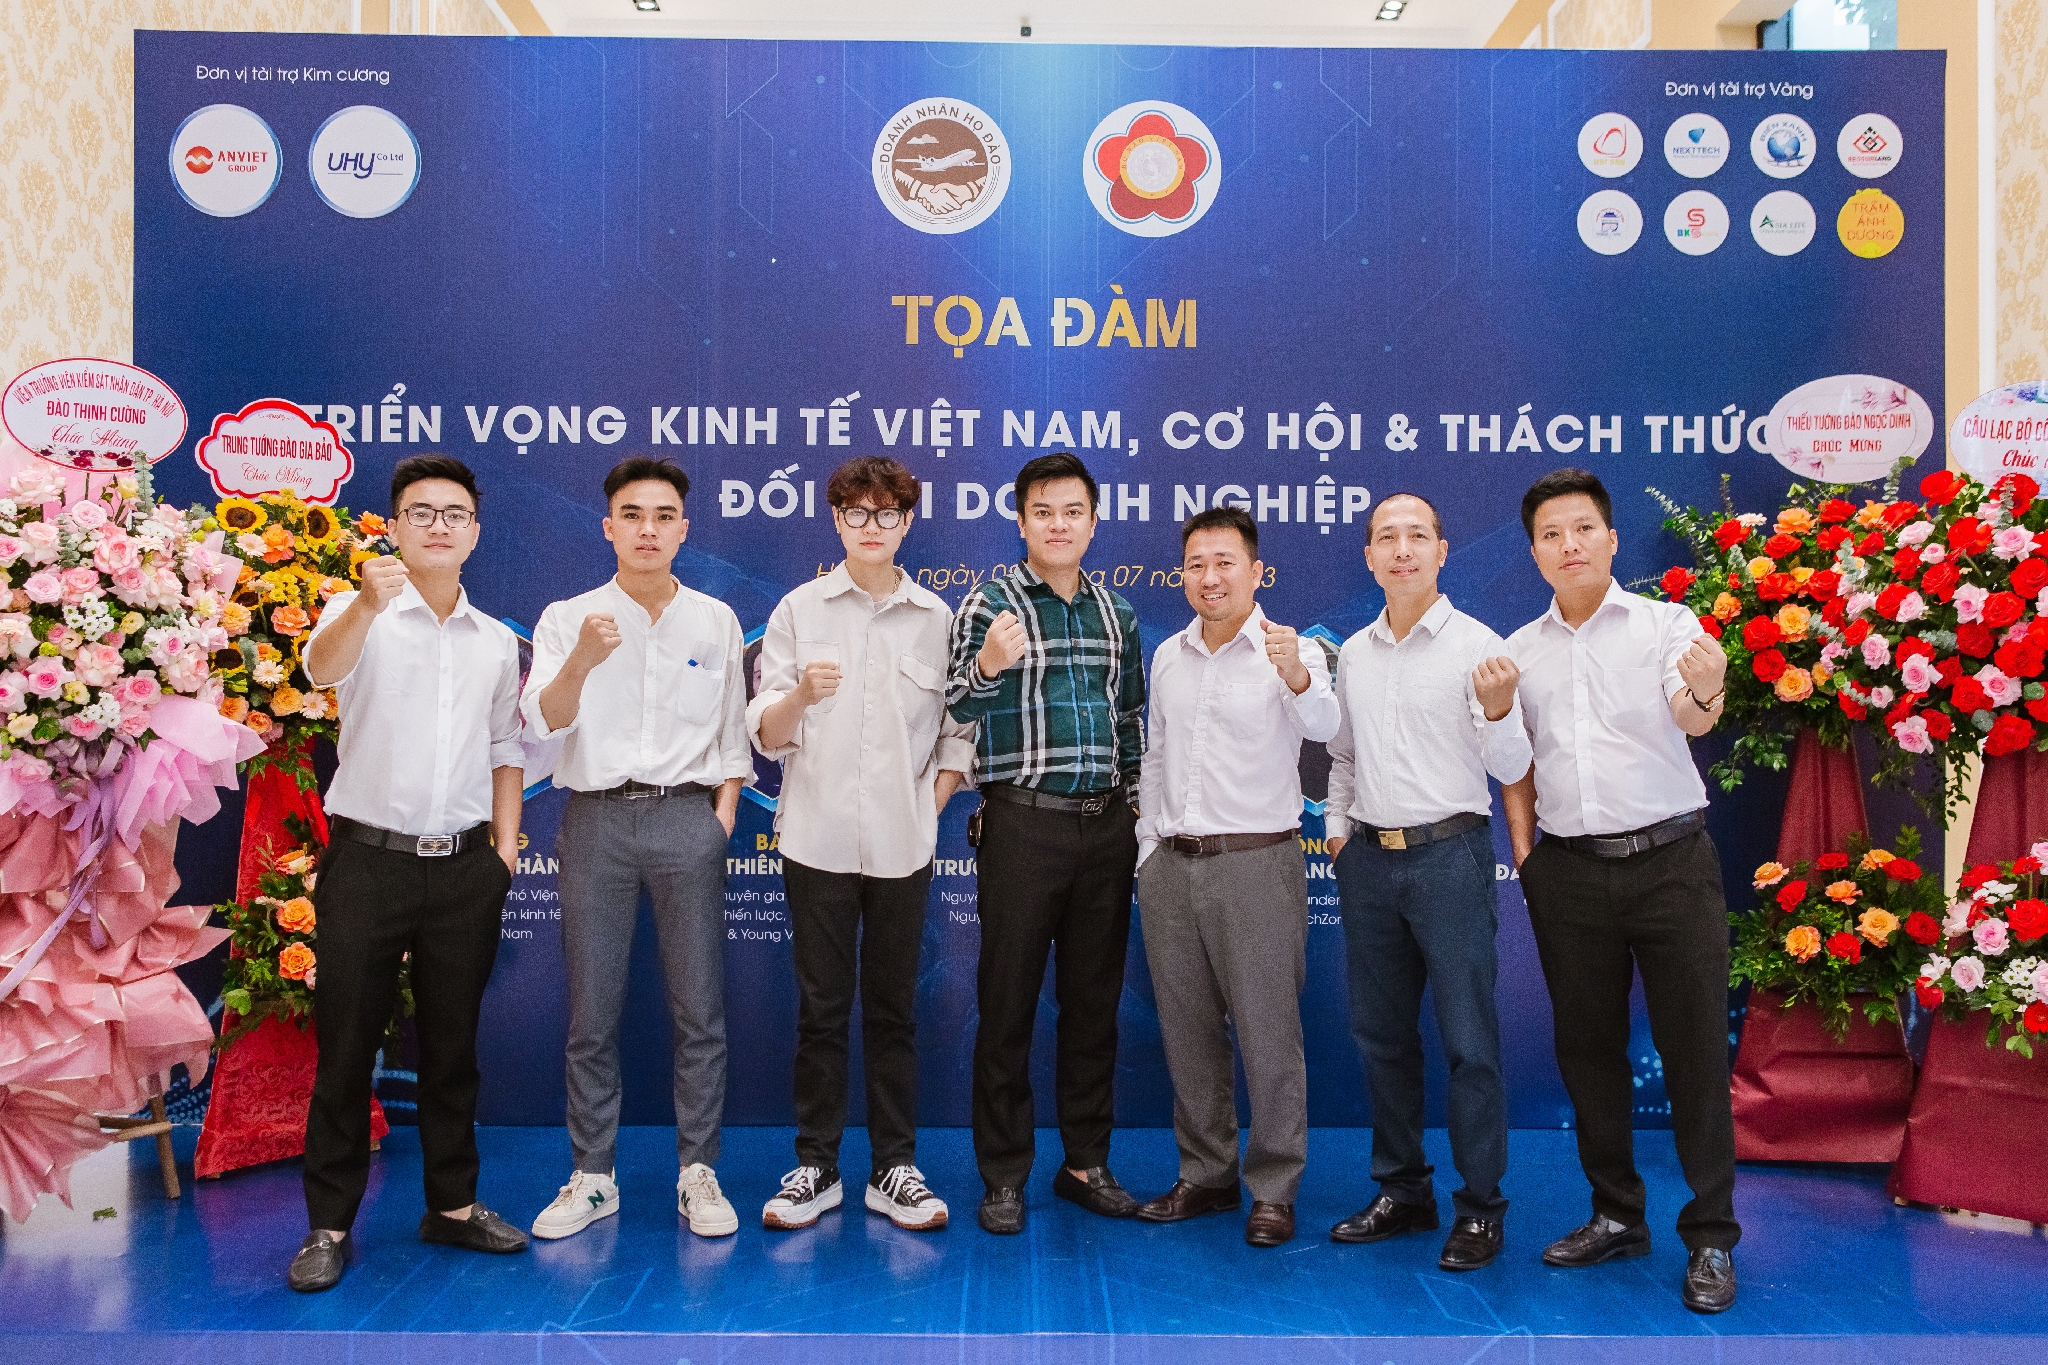 Nhựa kính cường lực Asia Lite tham gia "Toạ đàm Triển vọng kinh tế Việt Nam, cơ hội và thách thức đối với doanh nghiệp "